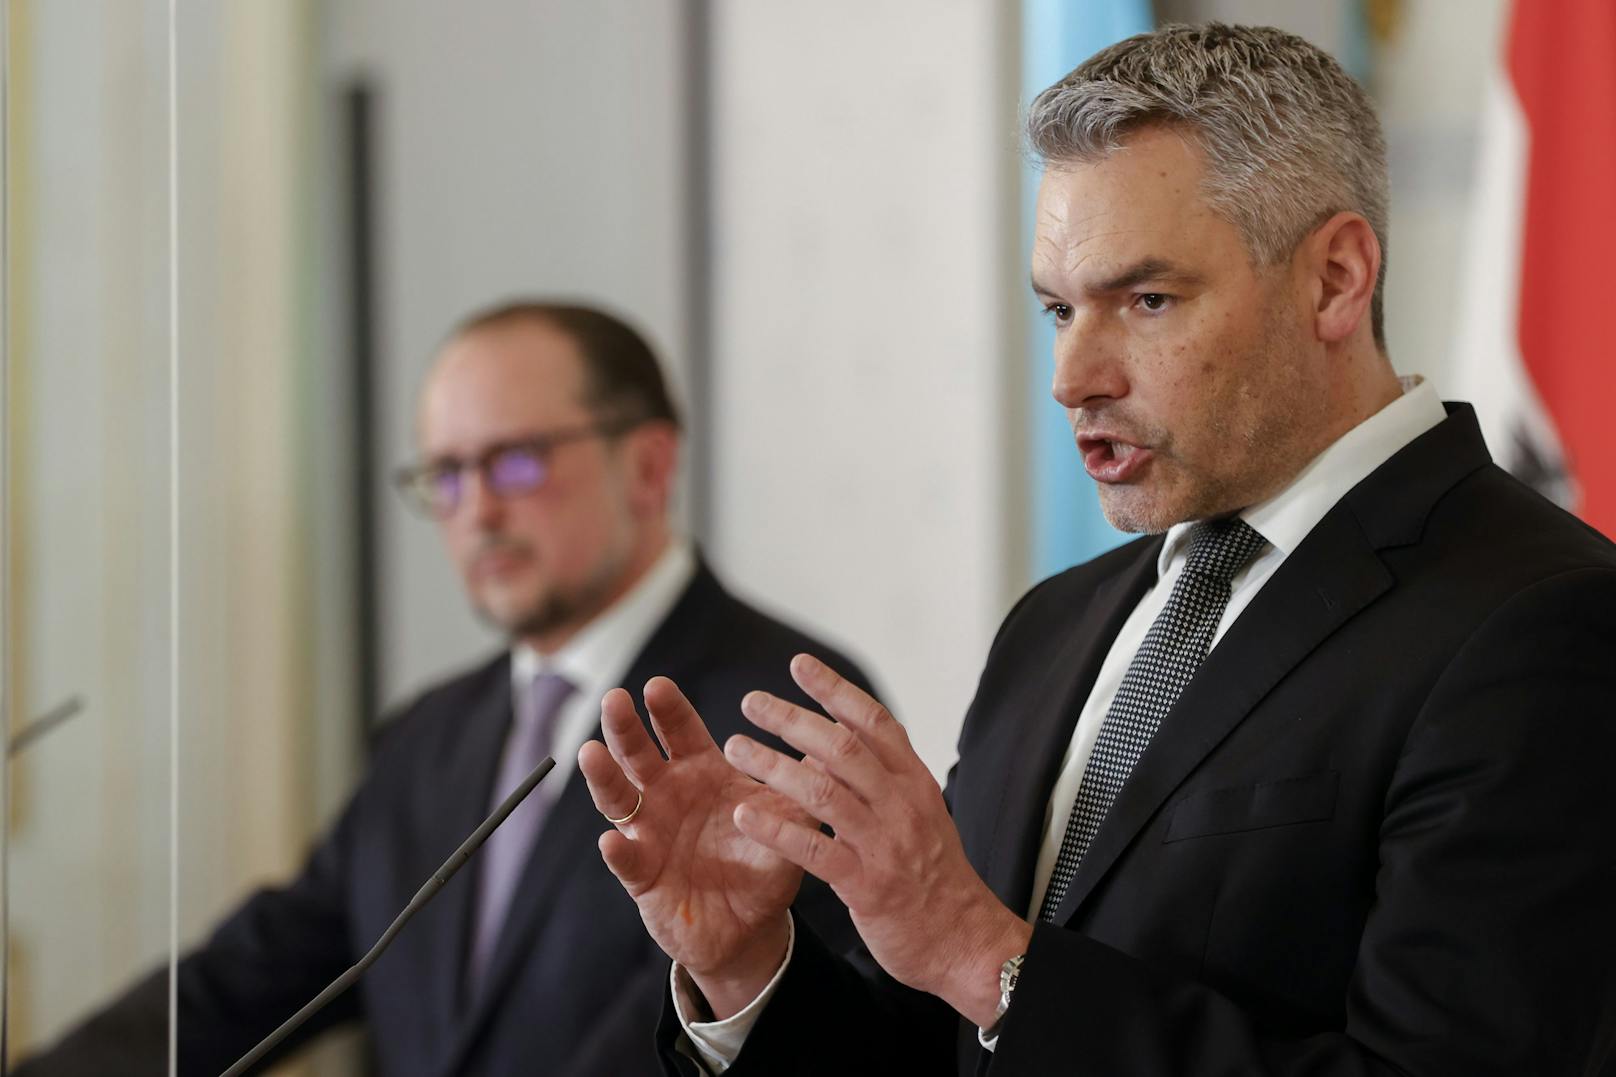 Pressestatement von Bundeskanzler Karl Nehammer (ÖVP) und Außenminister Alexander Schallenberg (ÖVP) zur Lage in der Ukraine am 1. März 2022.